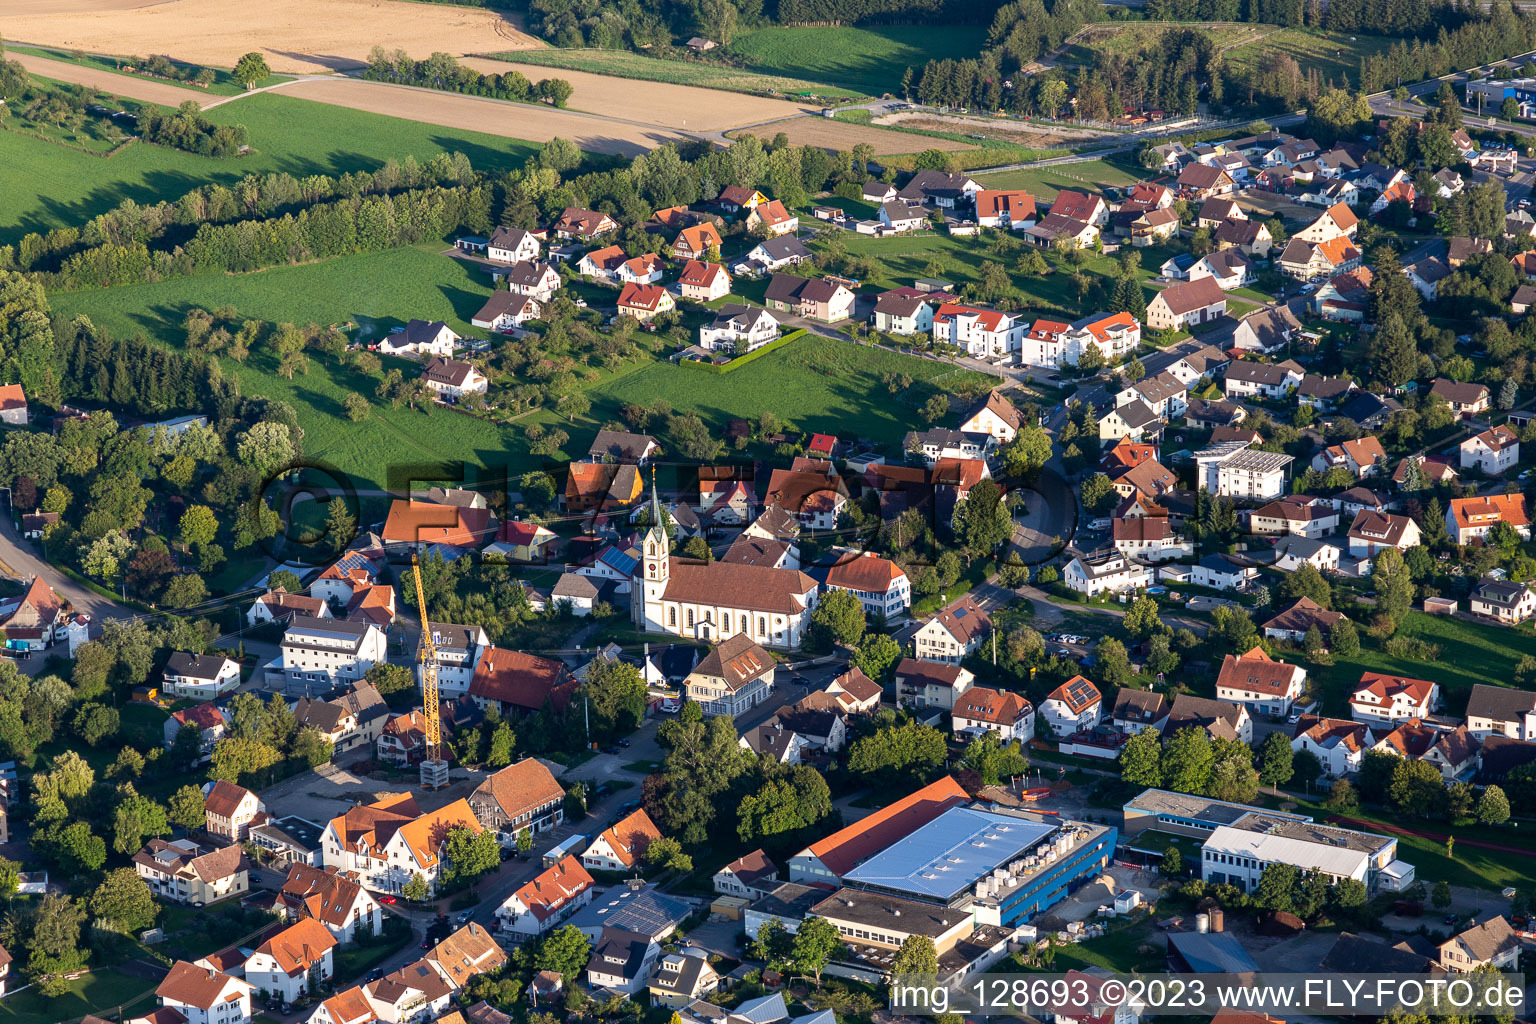 Vue aérienne de Bâtiment d'église au centre du village à Villingendorf dans le département Bade-Wurtemberg, Allemagne